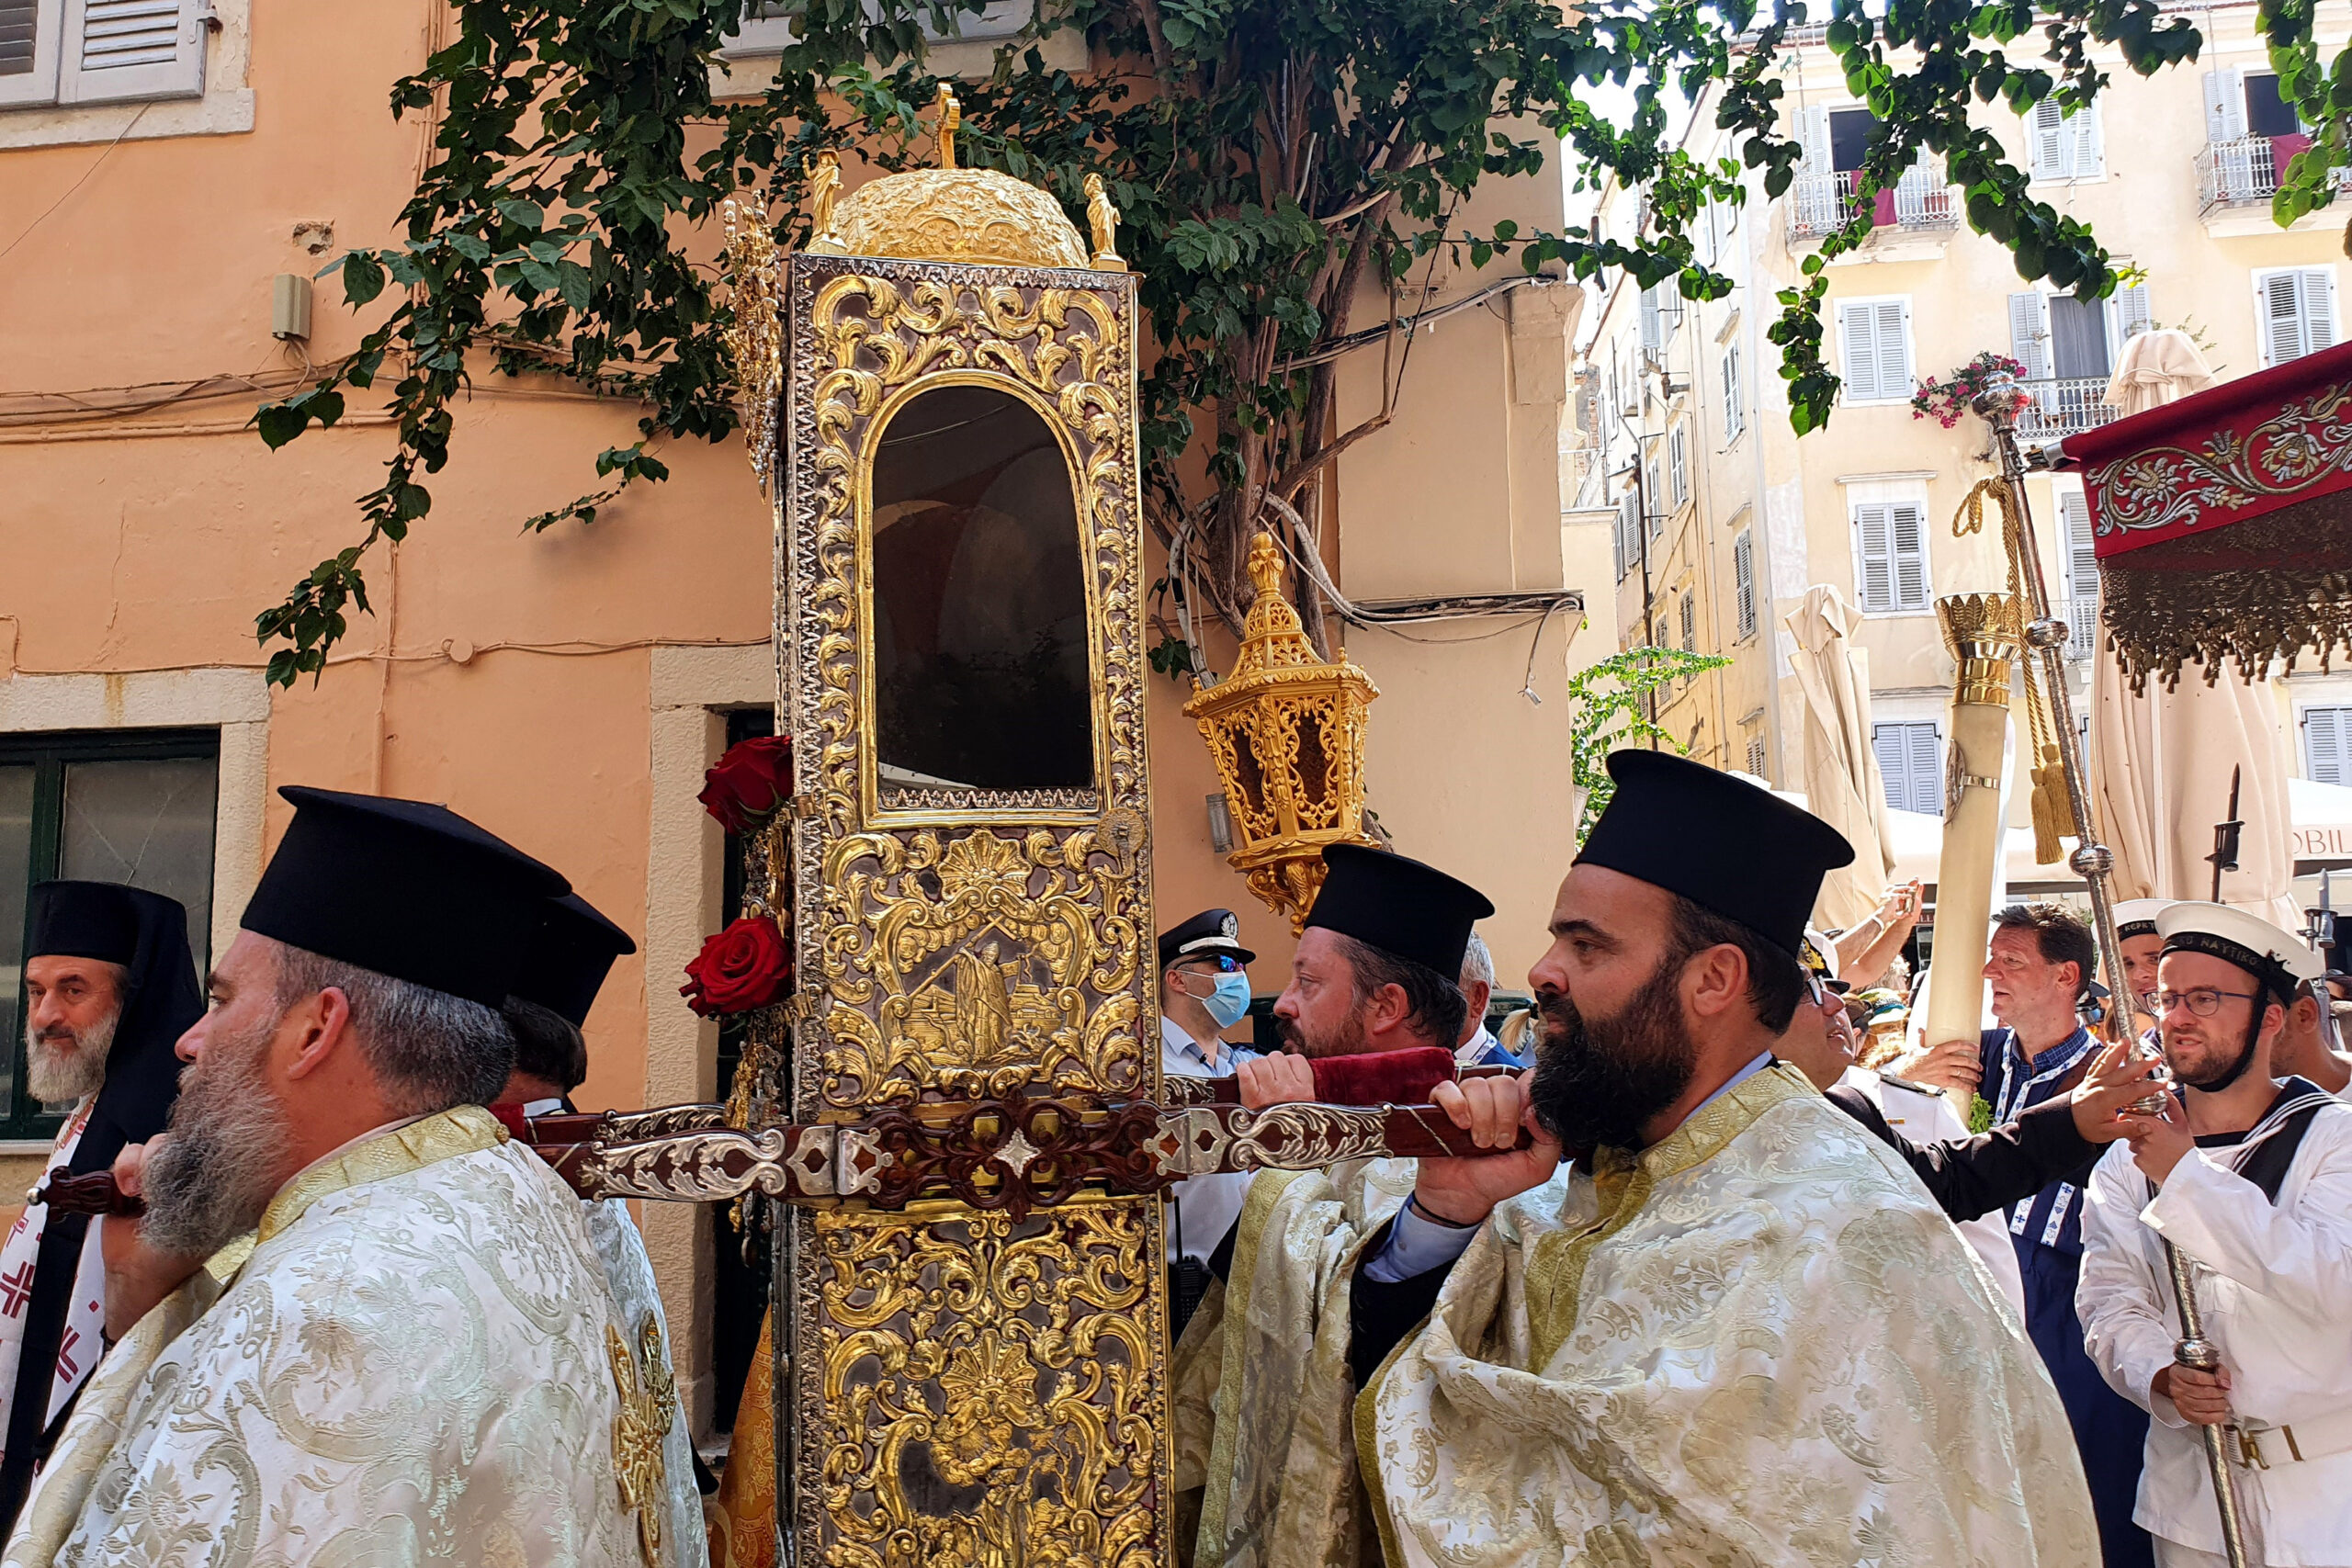 Κέρκυρα: Εκατοντάδες οι πιστοί που ακολούθησαν τη λιτανεία του ιερού σκηνώματος του Αγίου Σπυρίδωνα - Τι αναφέρει η θρησκευτική παράδοση